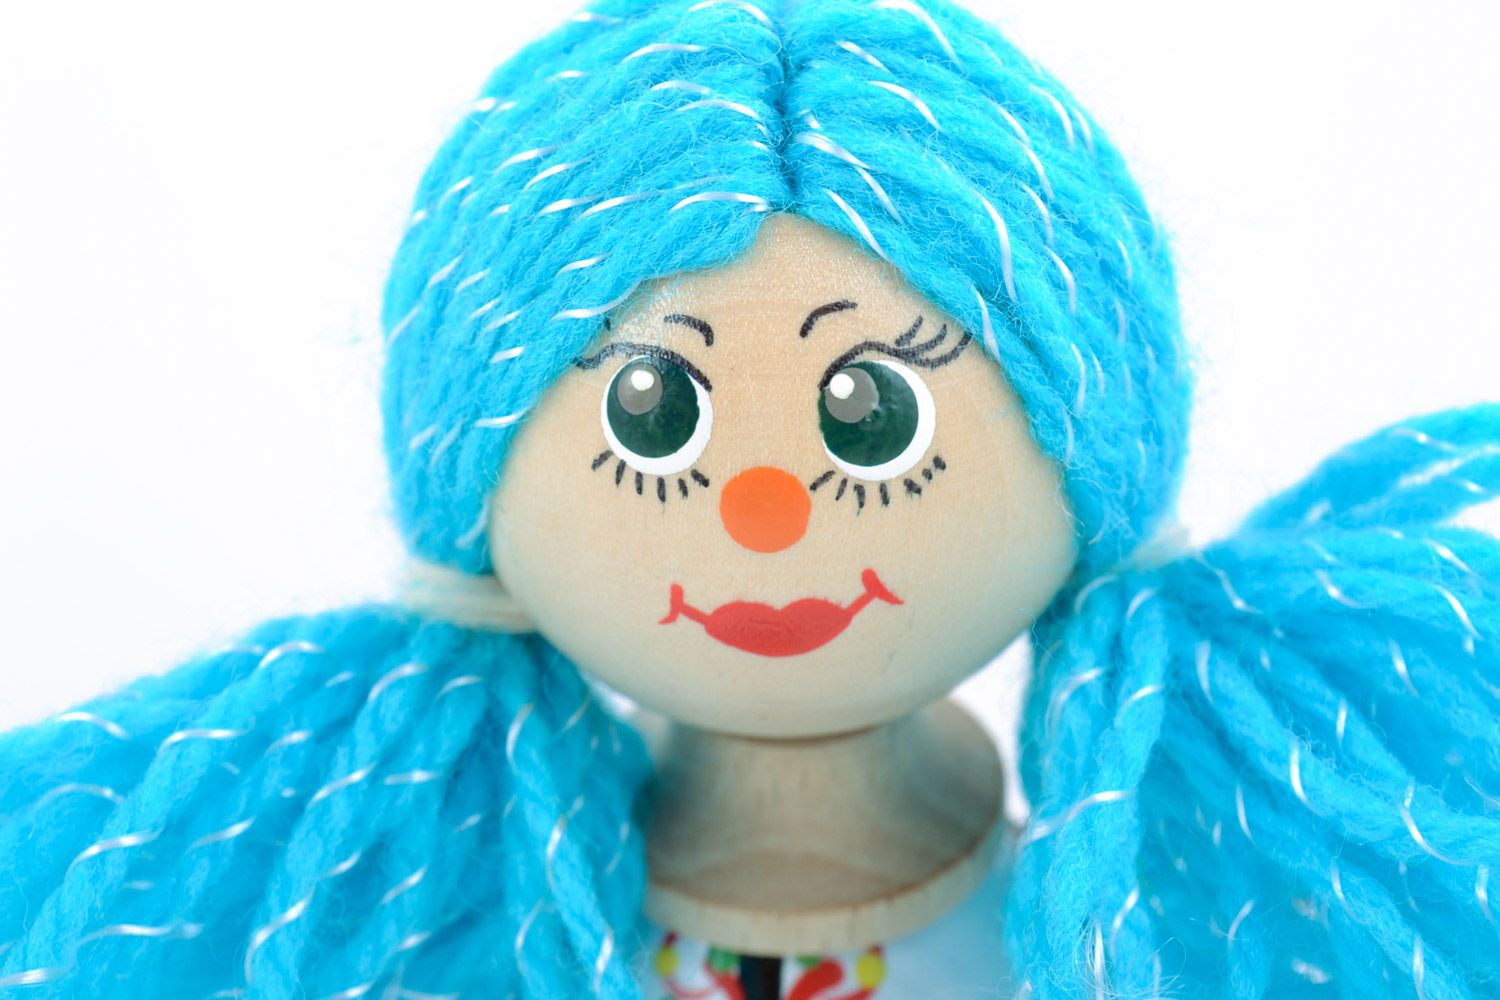 Petit jouet artisanal fait main écologique peint Fille aux cheveux bleus photo 3